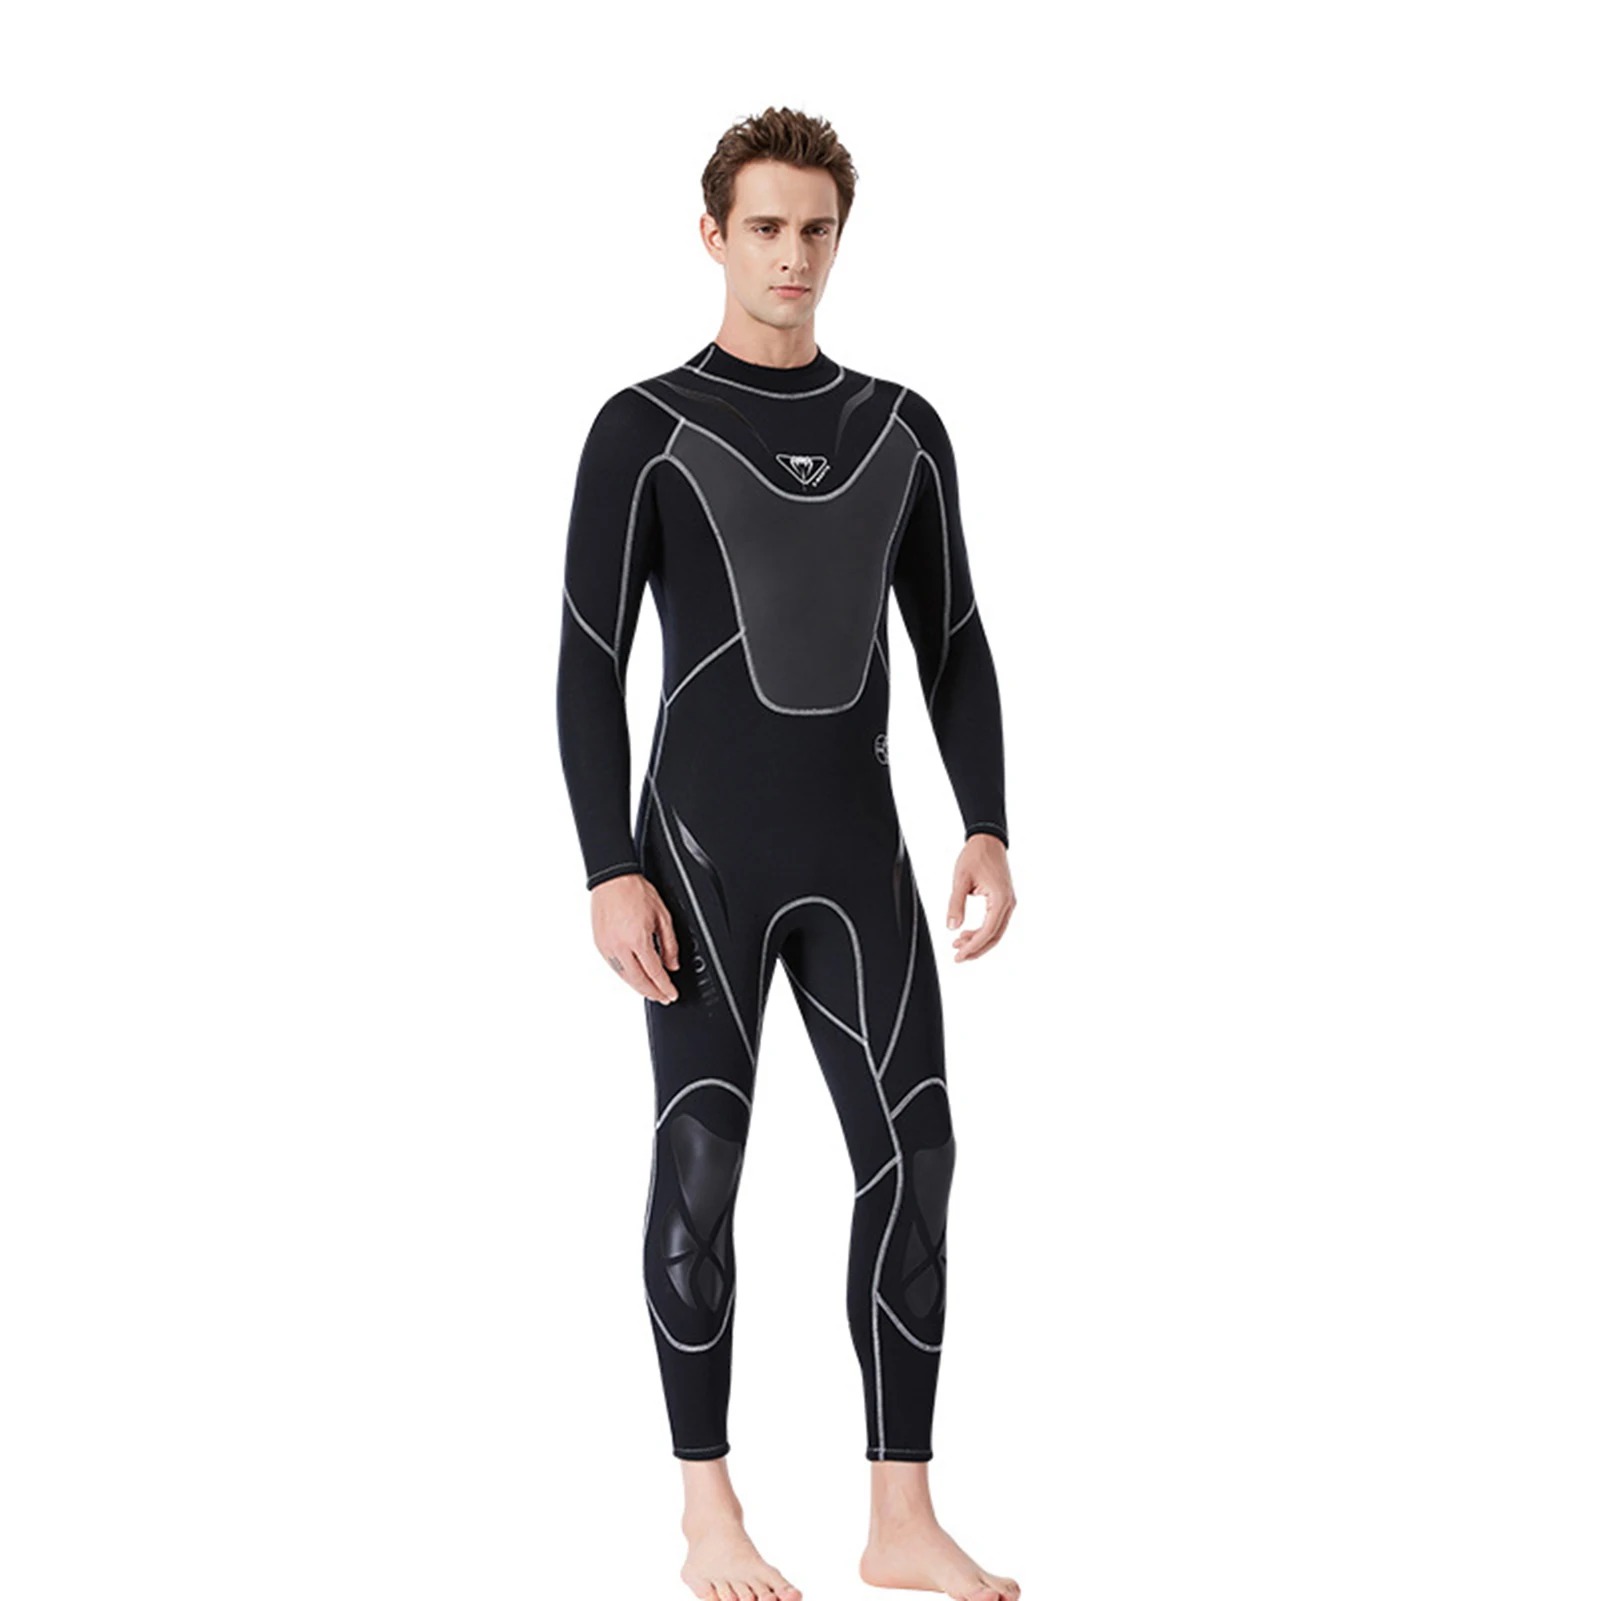 

Купальный мужской неопреновый гидрокостюм с молнией на спине, 3 мм, для серфинга, подводного плавания, водных видов спорта